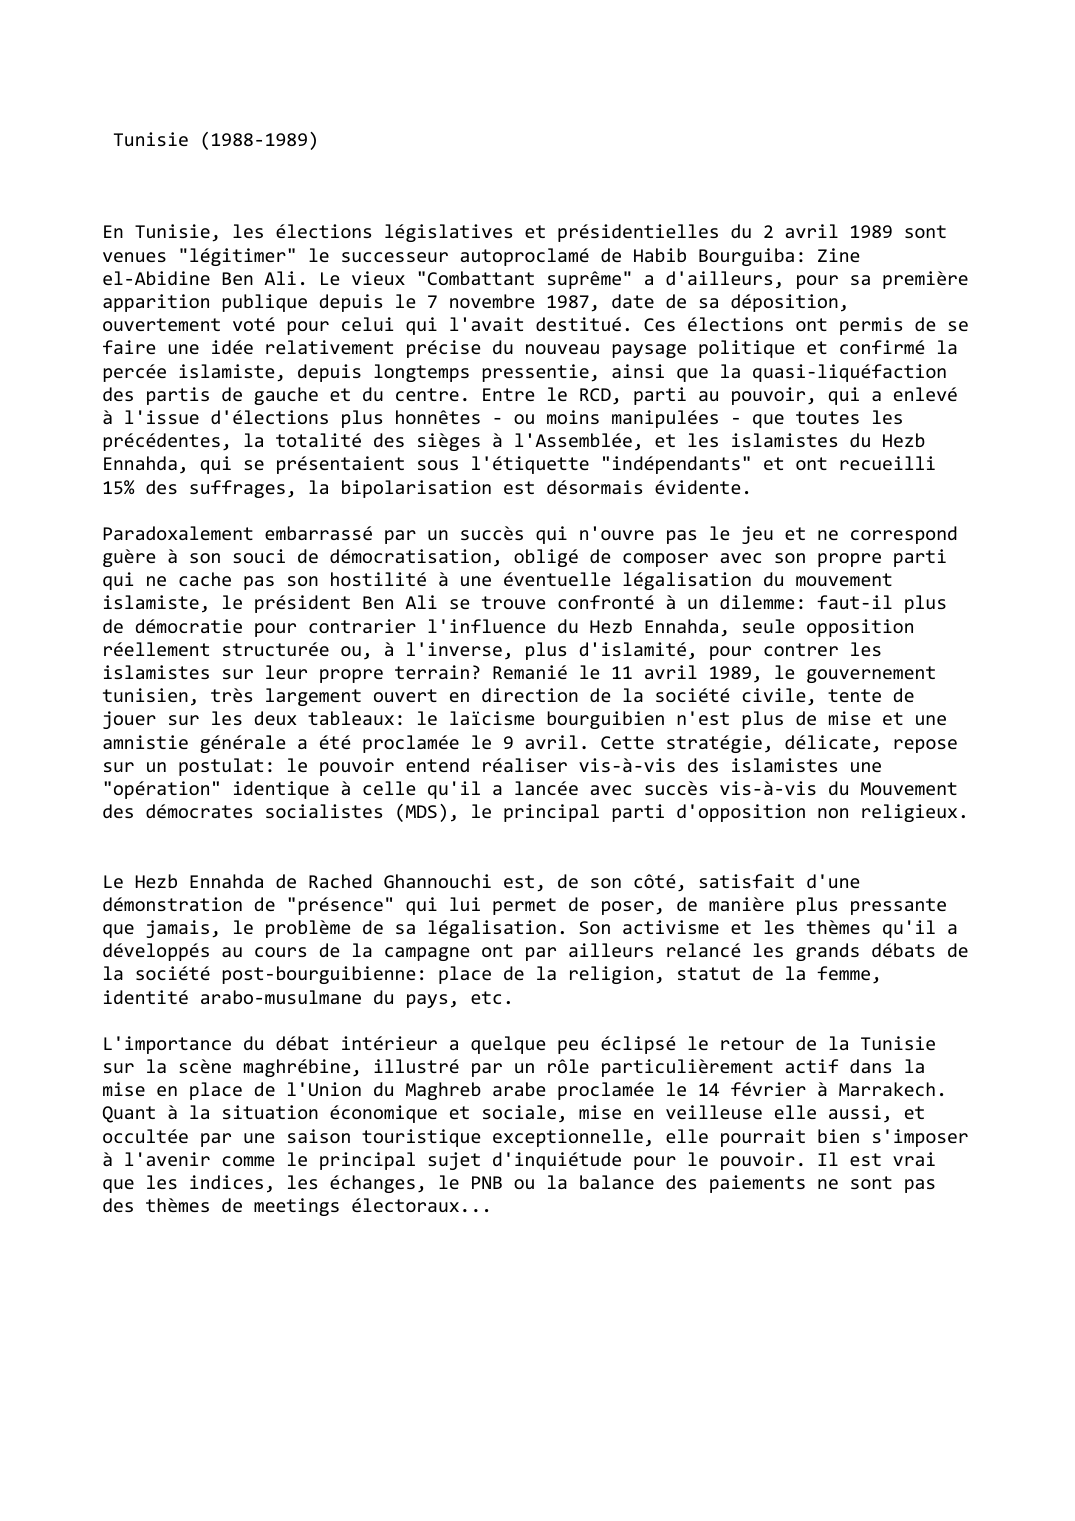 Prévisualisation du document Tunisie (1988-1989)